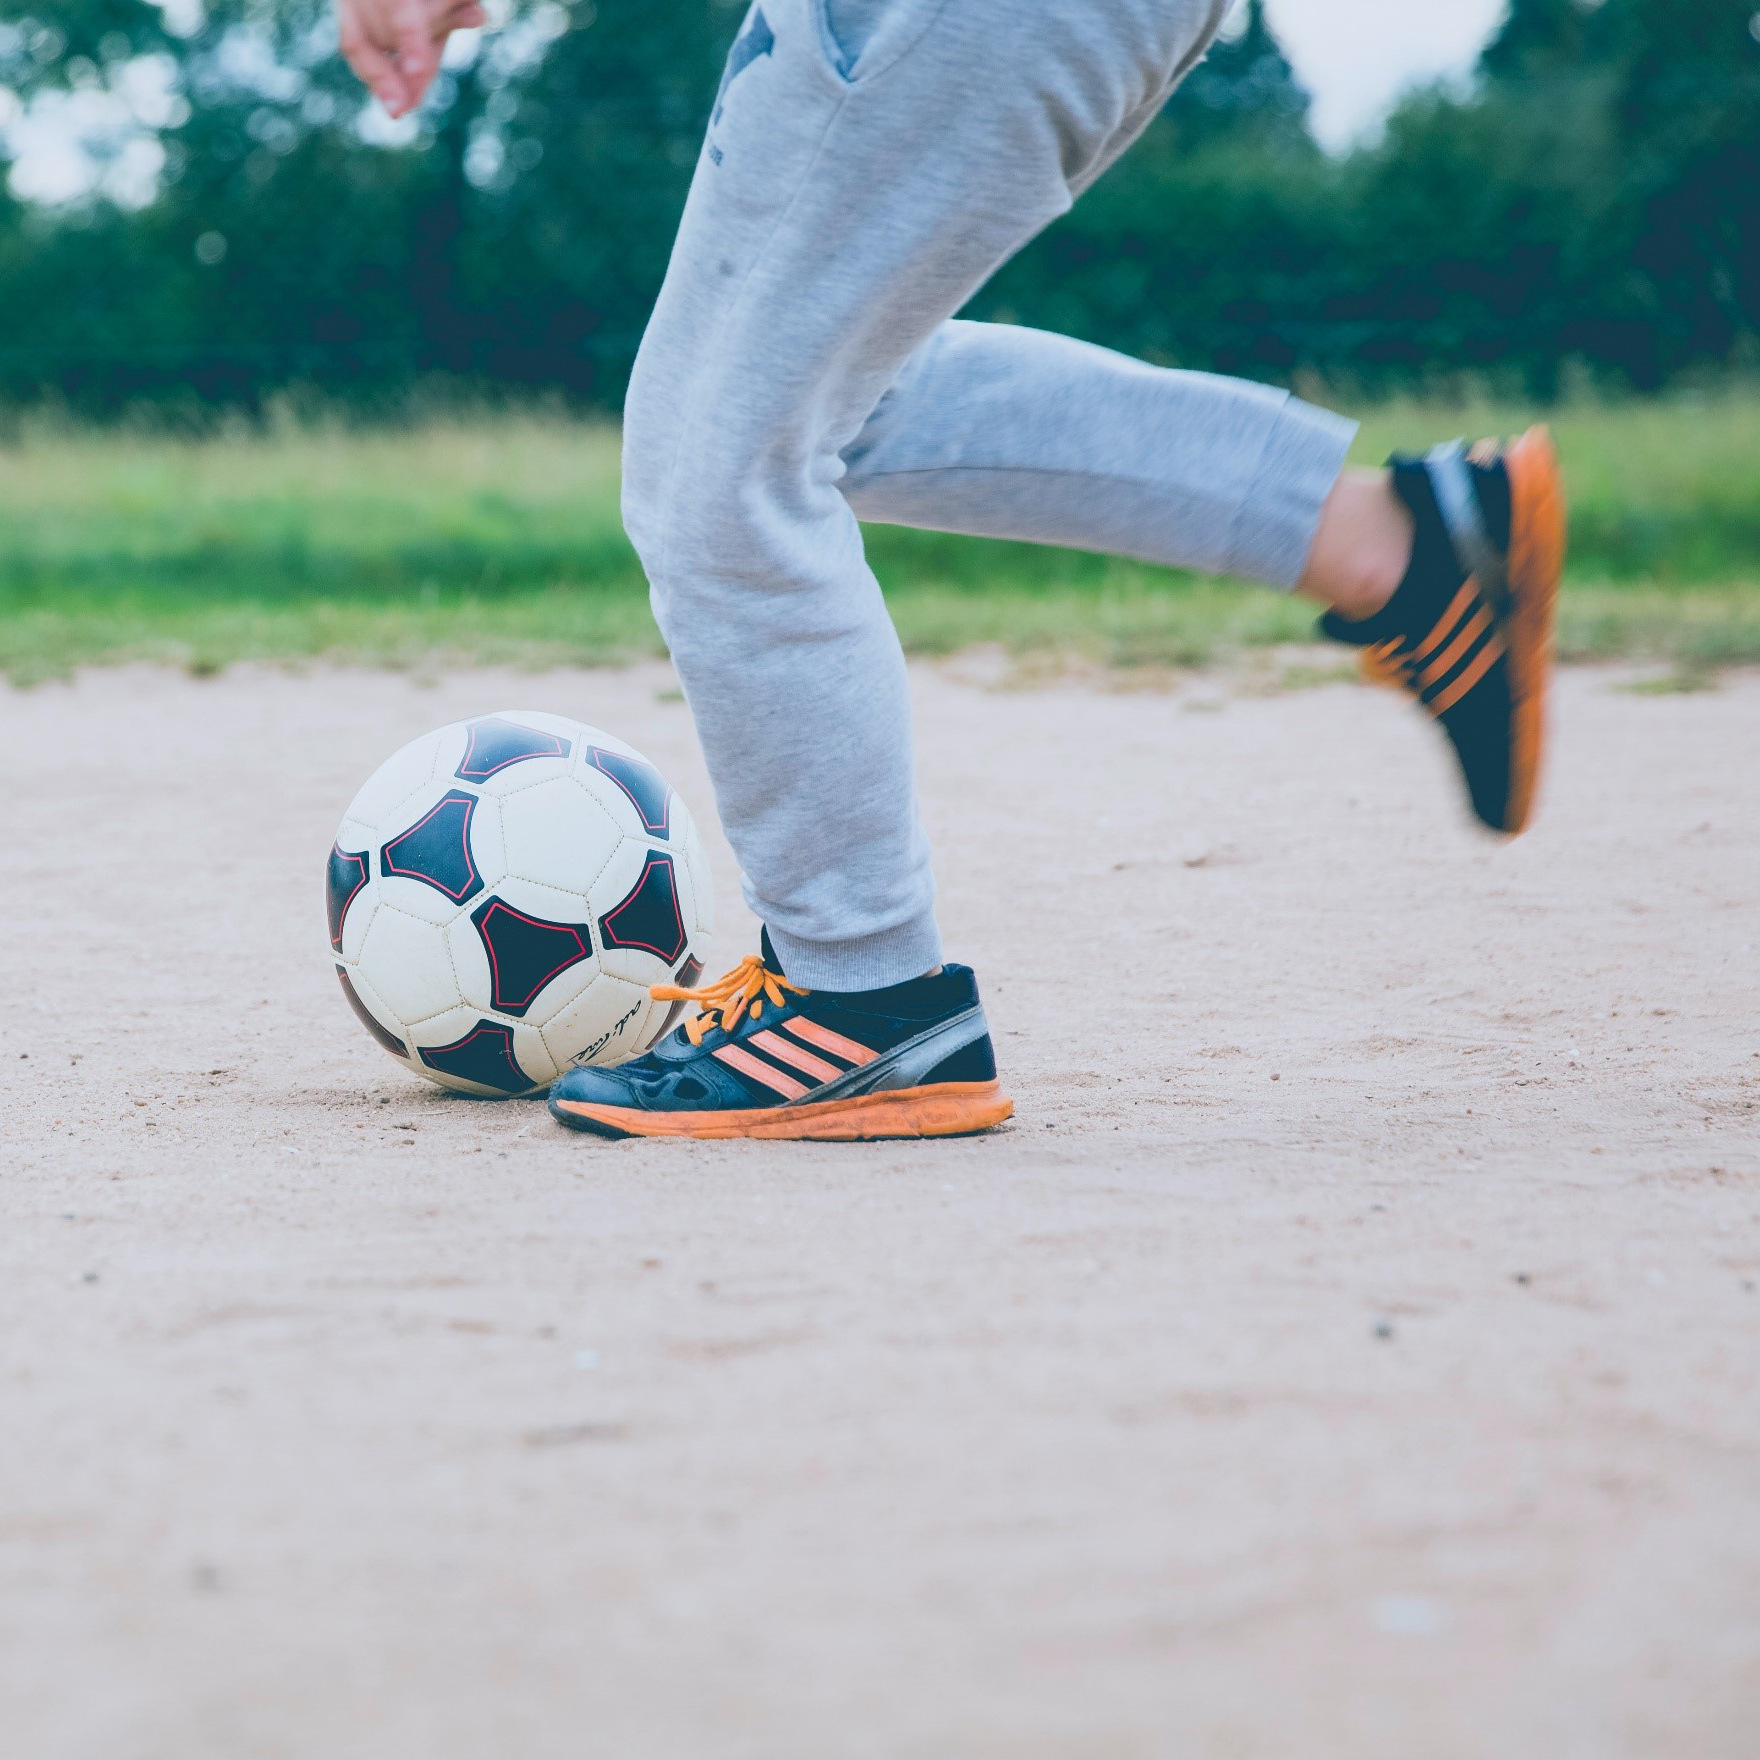 A child kicking a soccer ball. Photo by Markus Spiske on Unsplash.